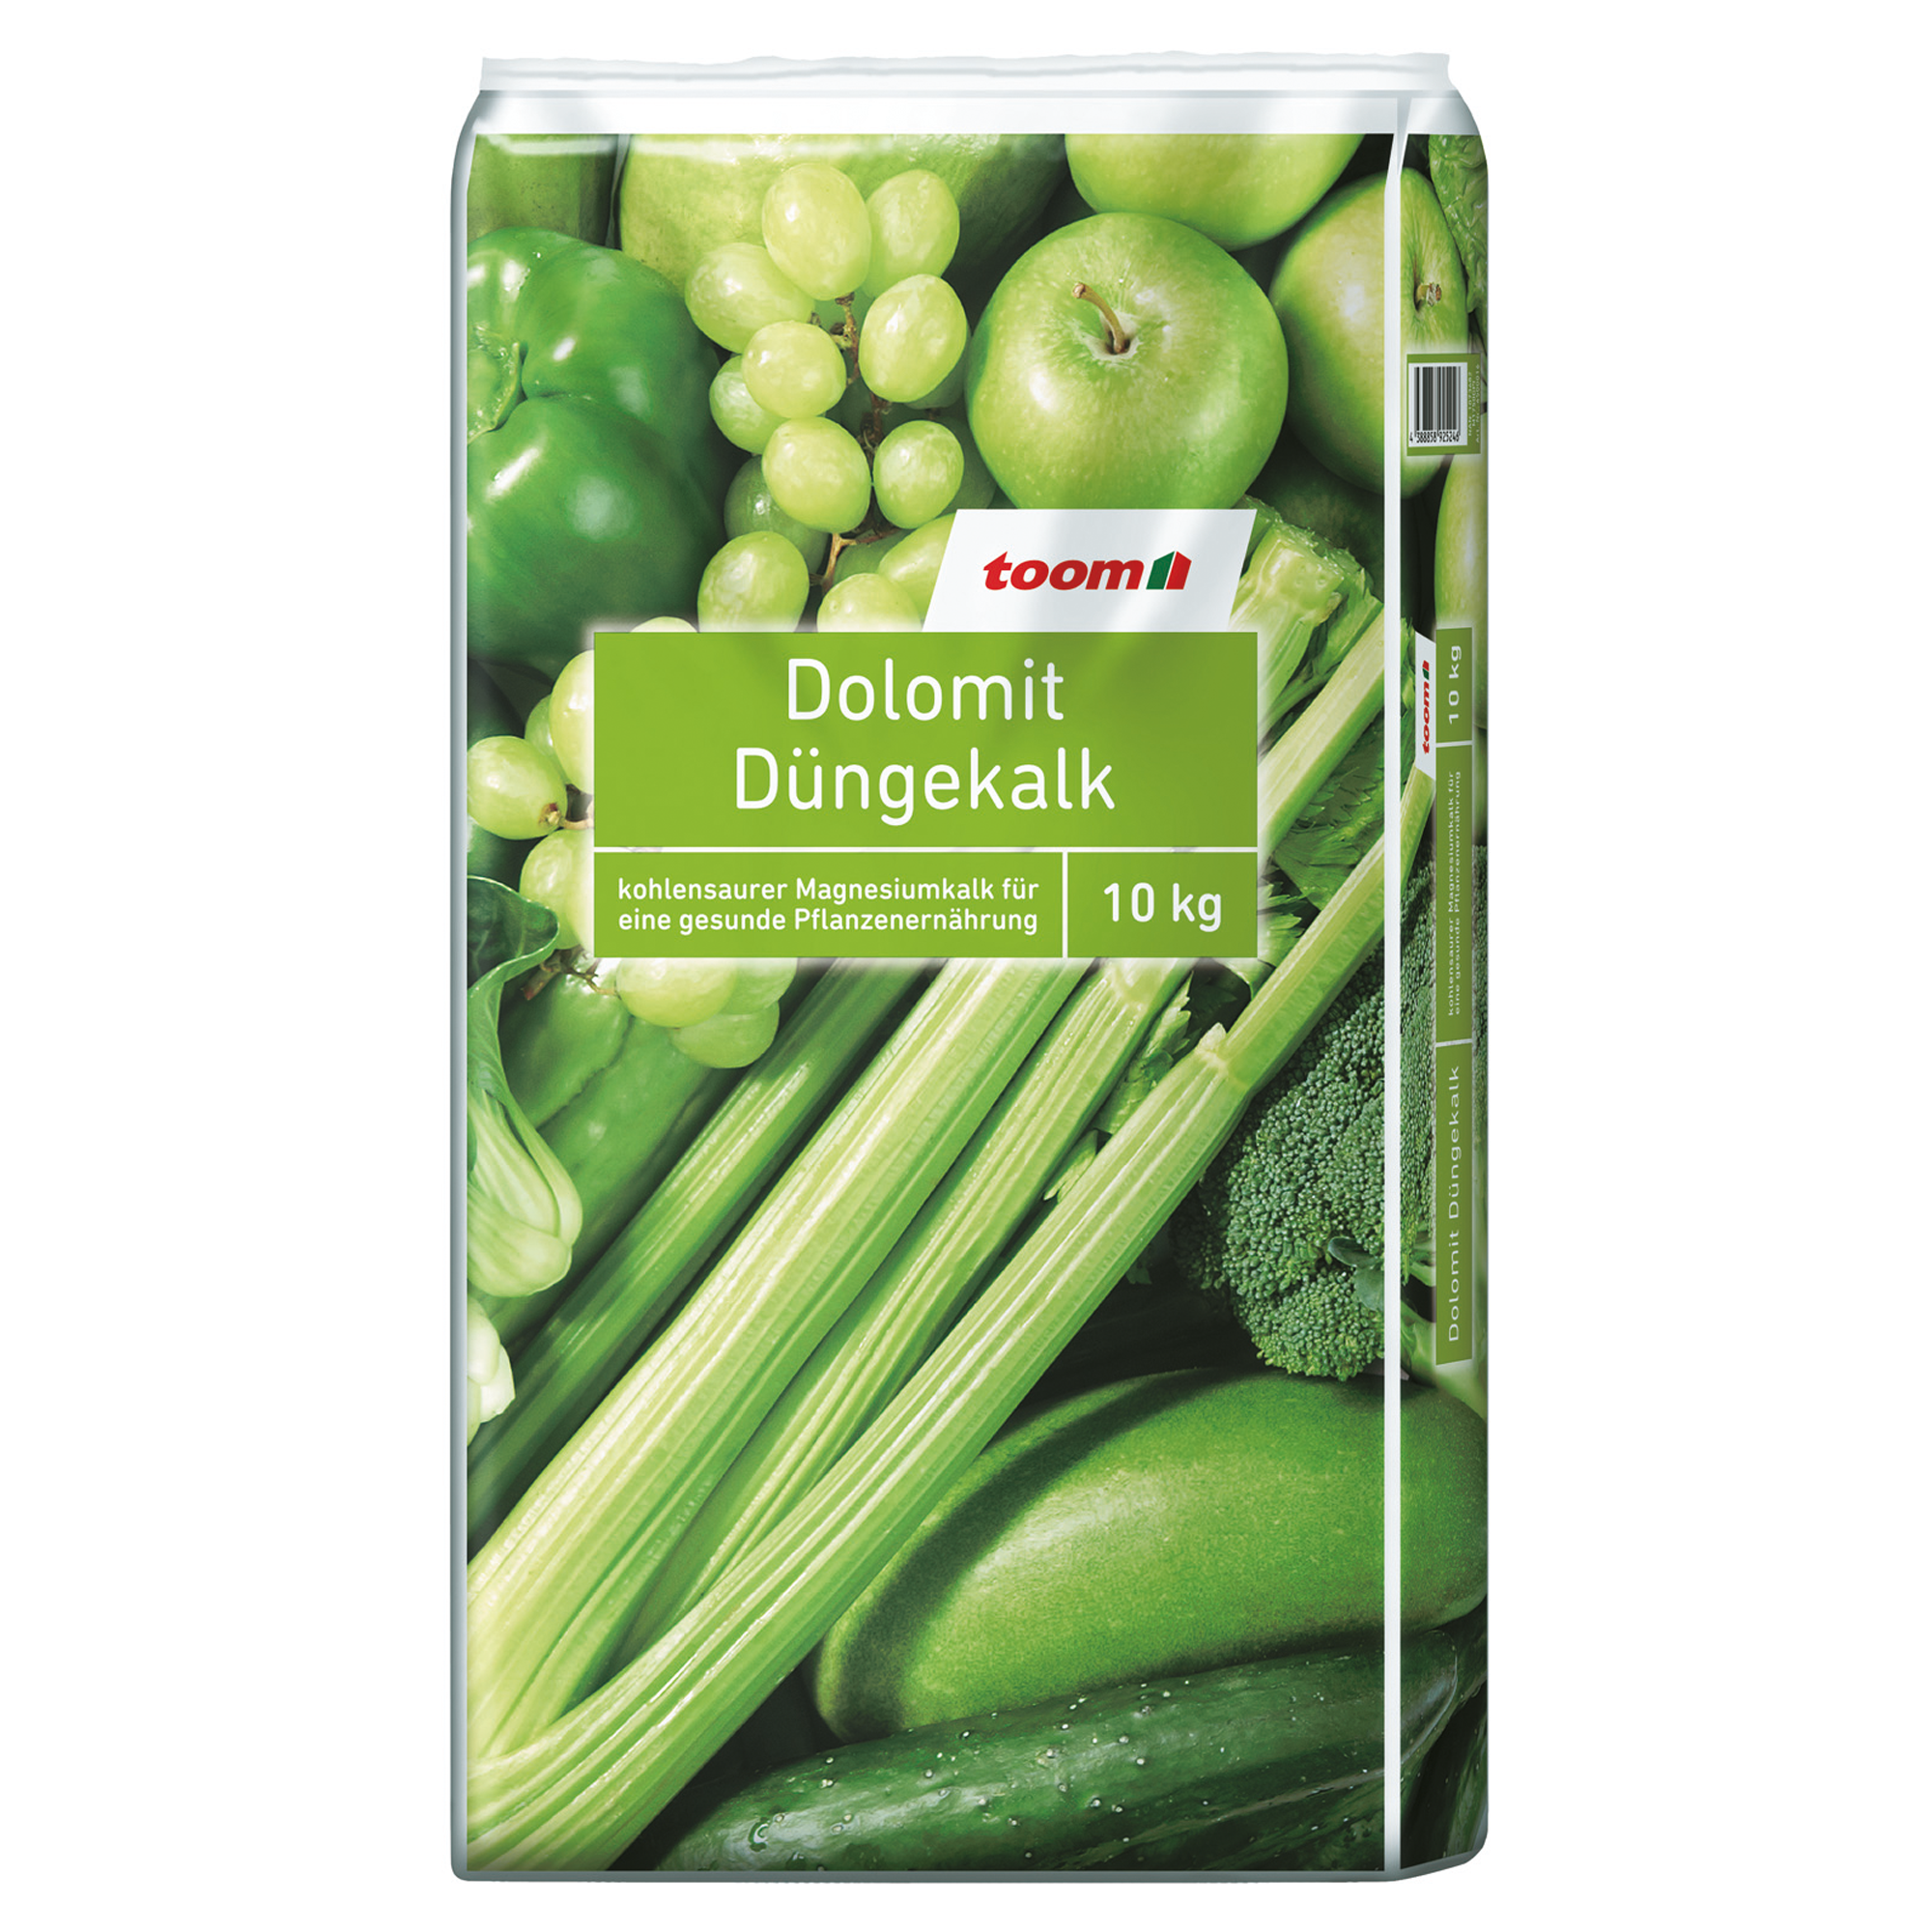 Dolomit-Düngekalk 10 kg + product picture